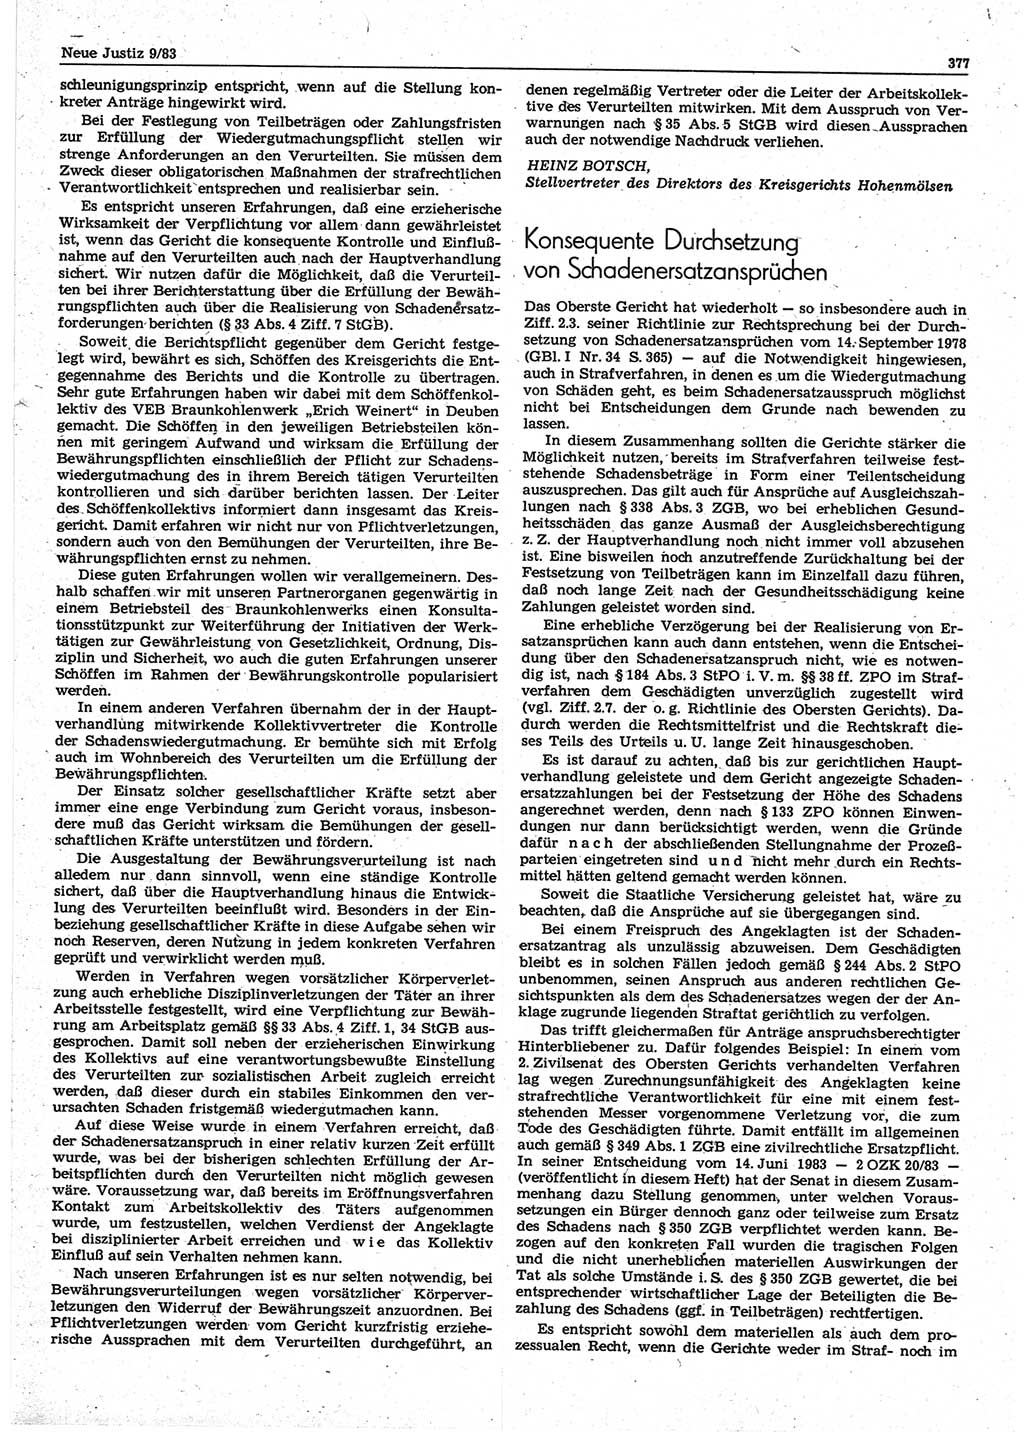 Neue Justiz (NJ), Zeitschrift für sozialistisches Recht und Gesetzlichkeit [Deutsche Demokratische Republik (DDR)], 37. Jahrgang 1983, Seite 377 (NJ DDR 1983, S. 377)